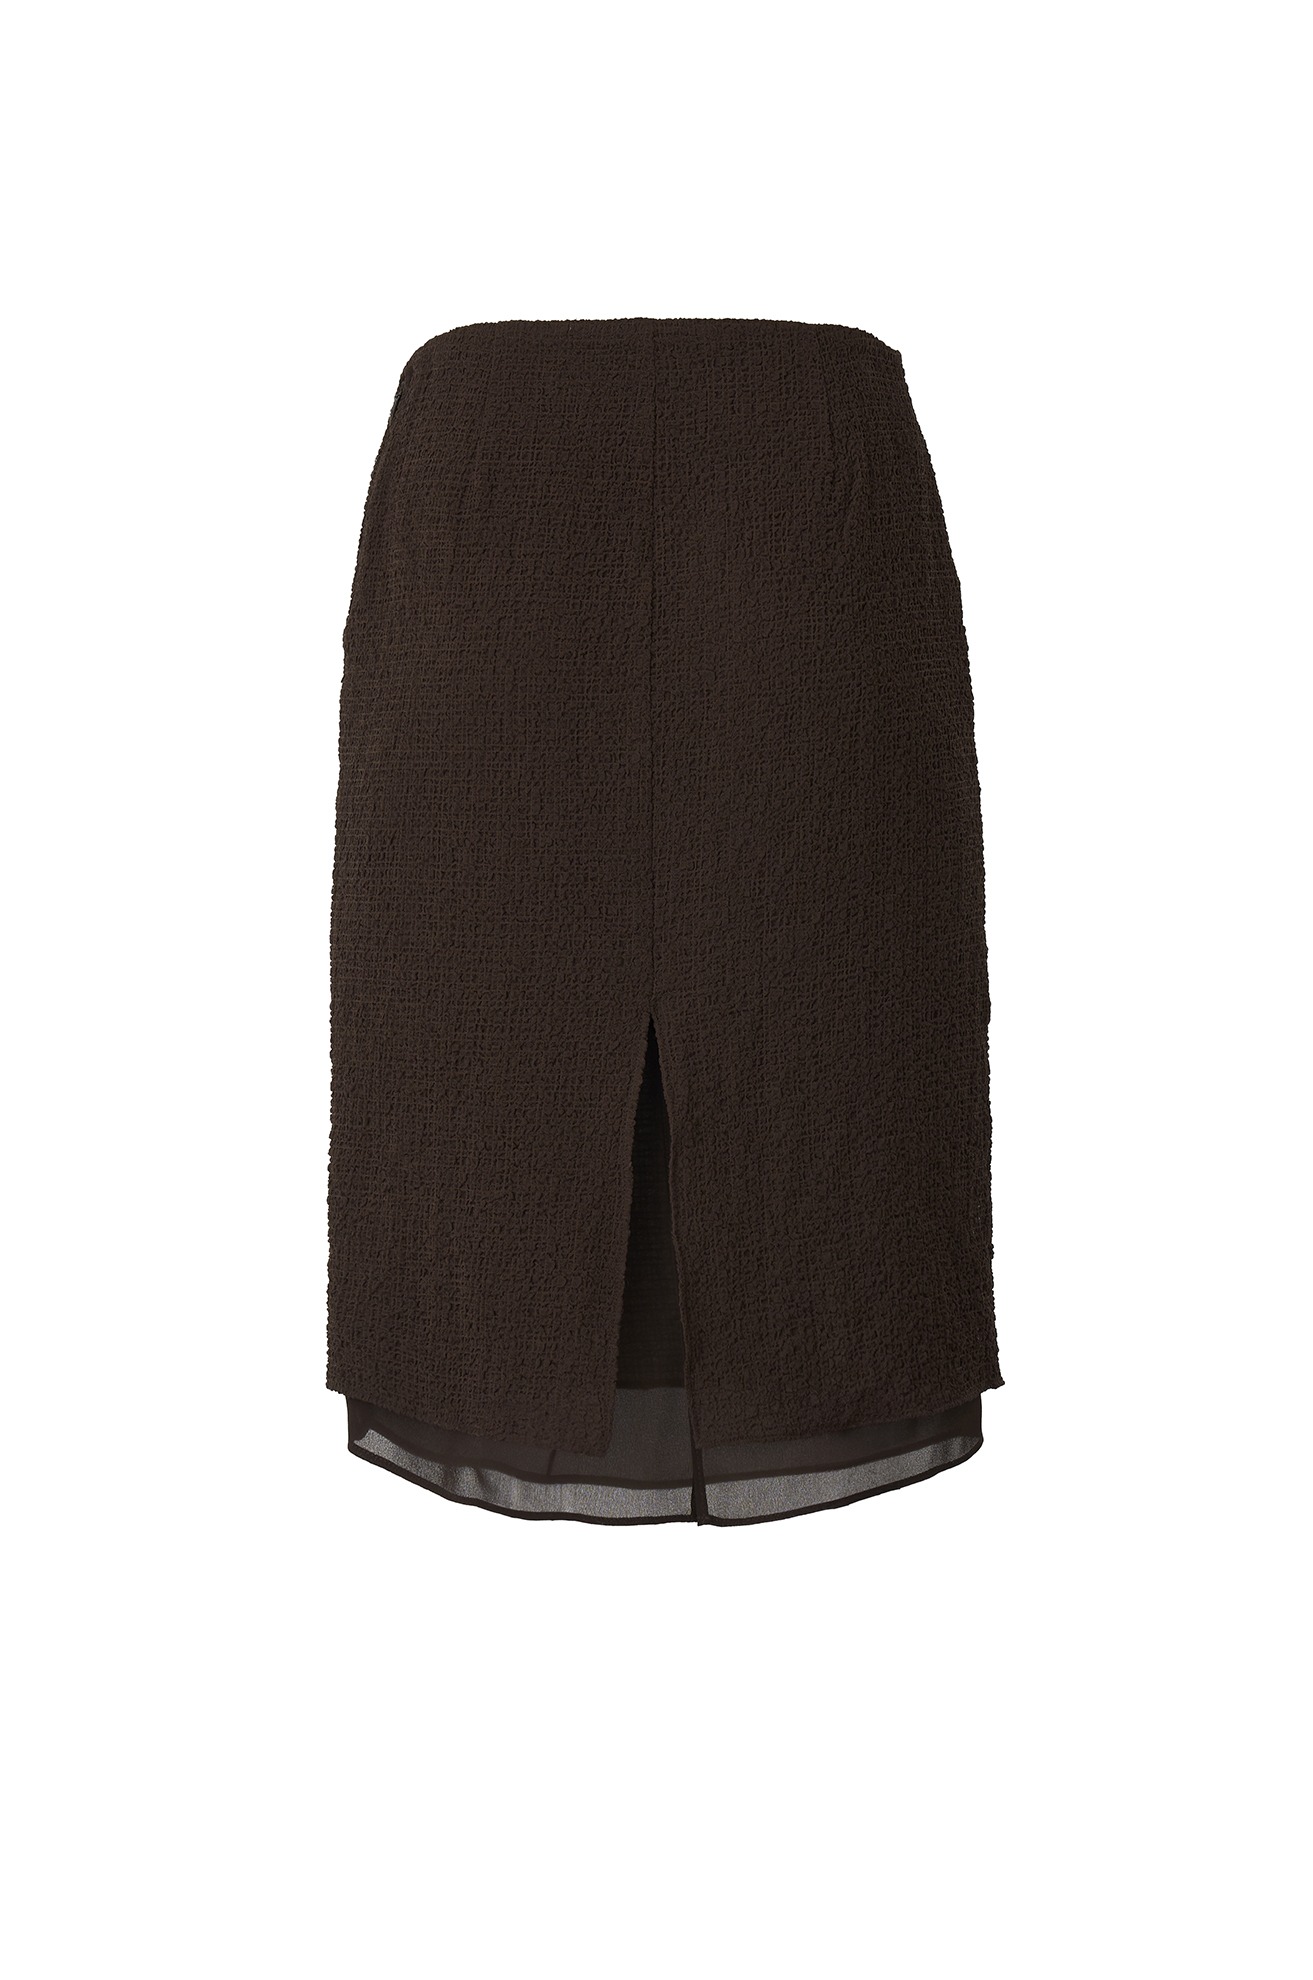 Wrinkle Skirt (Brown)